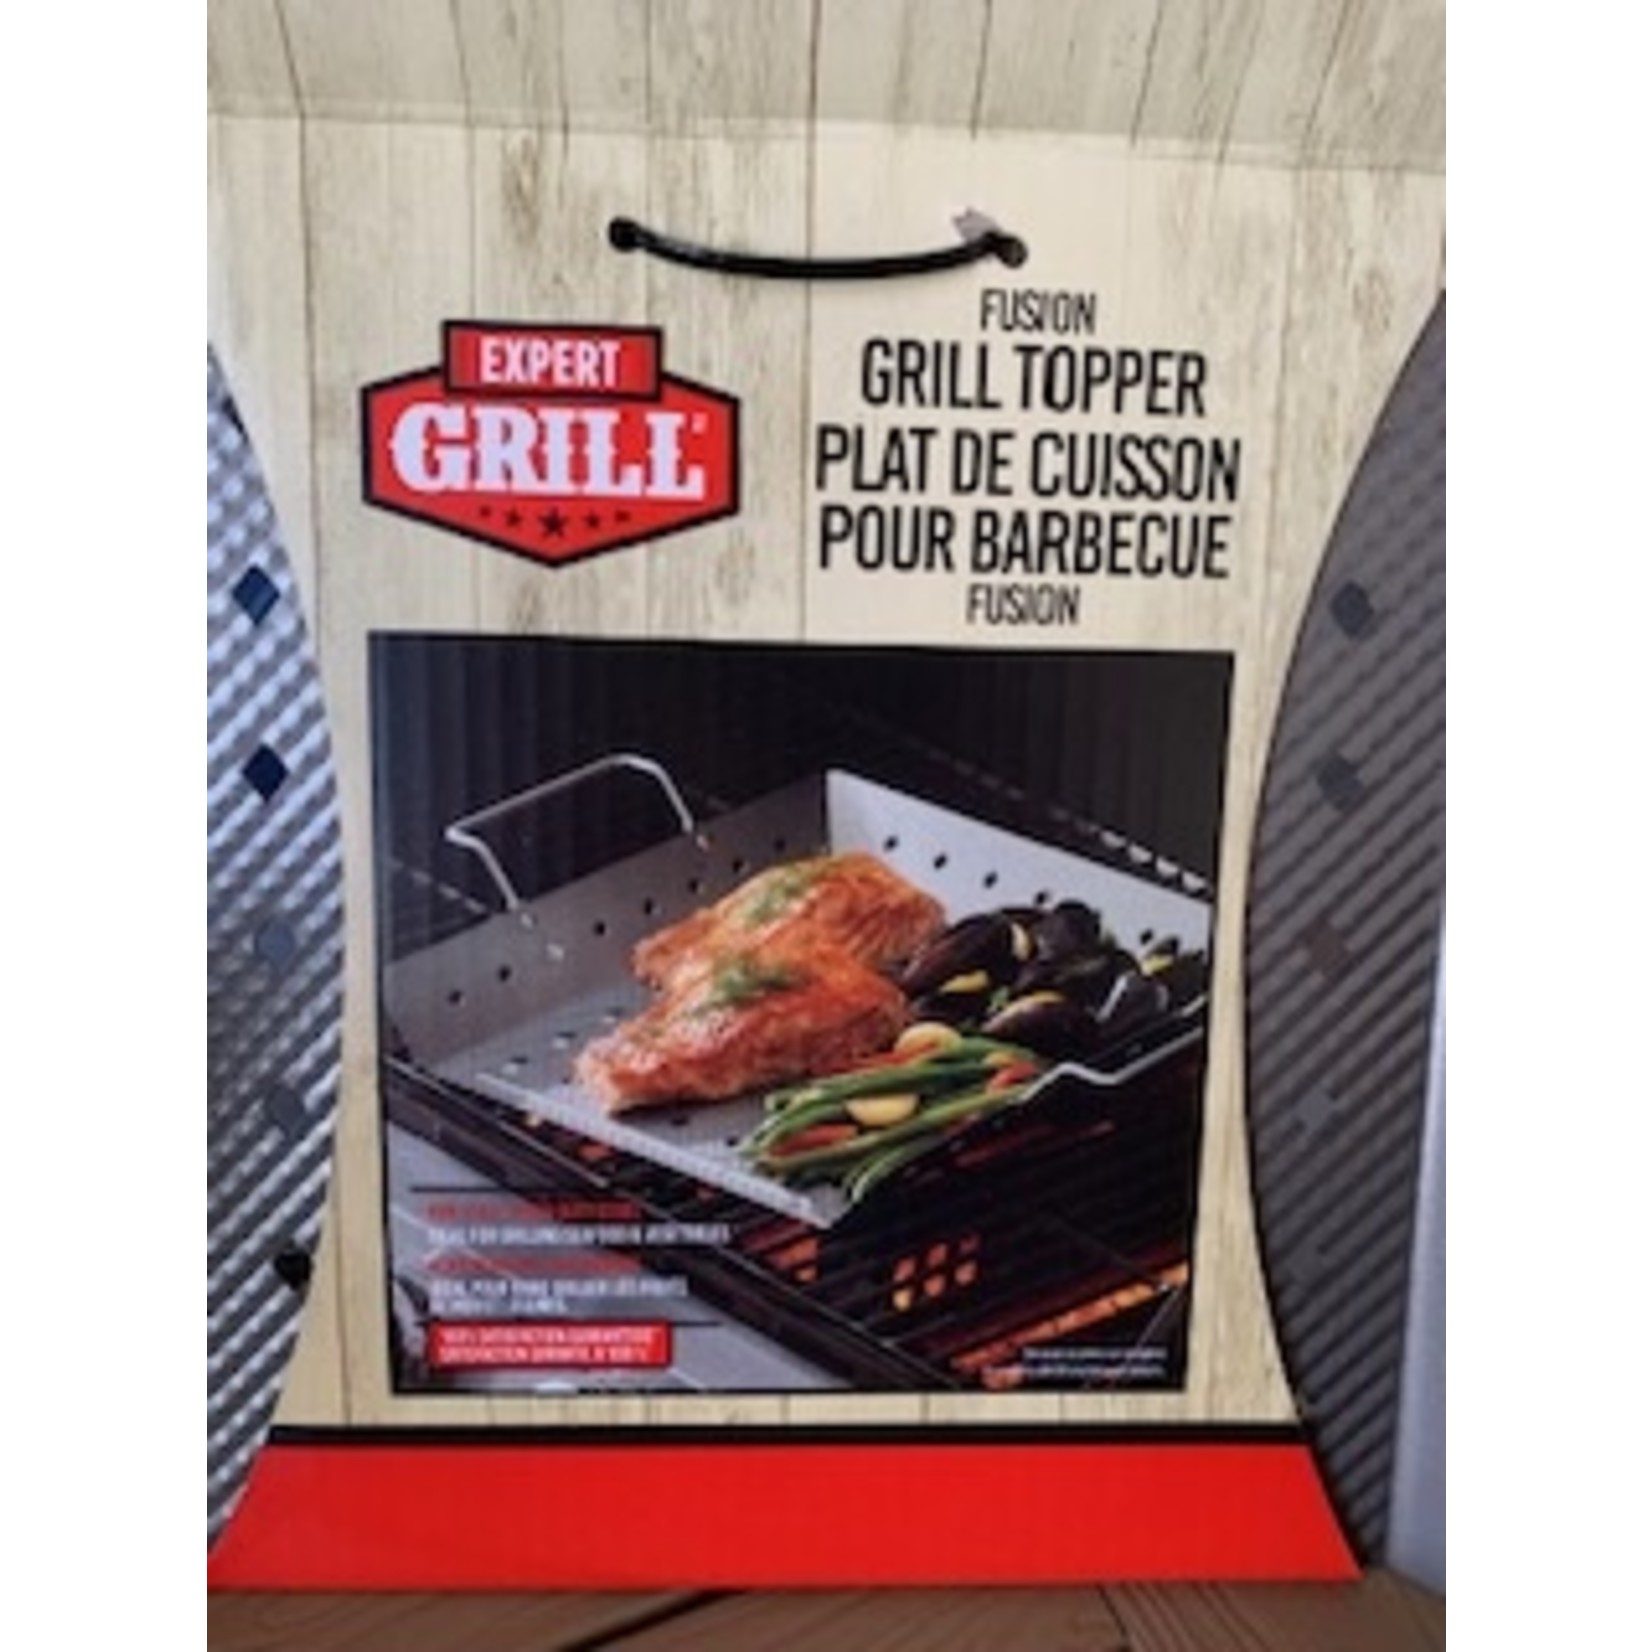 Nova Expert Grill Fusion Grill Topper